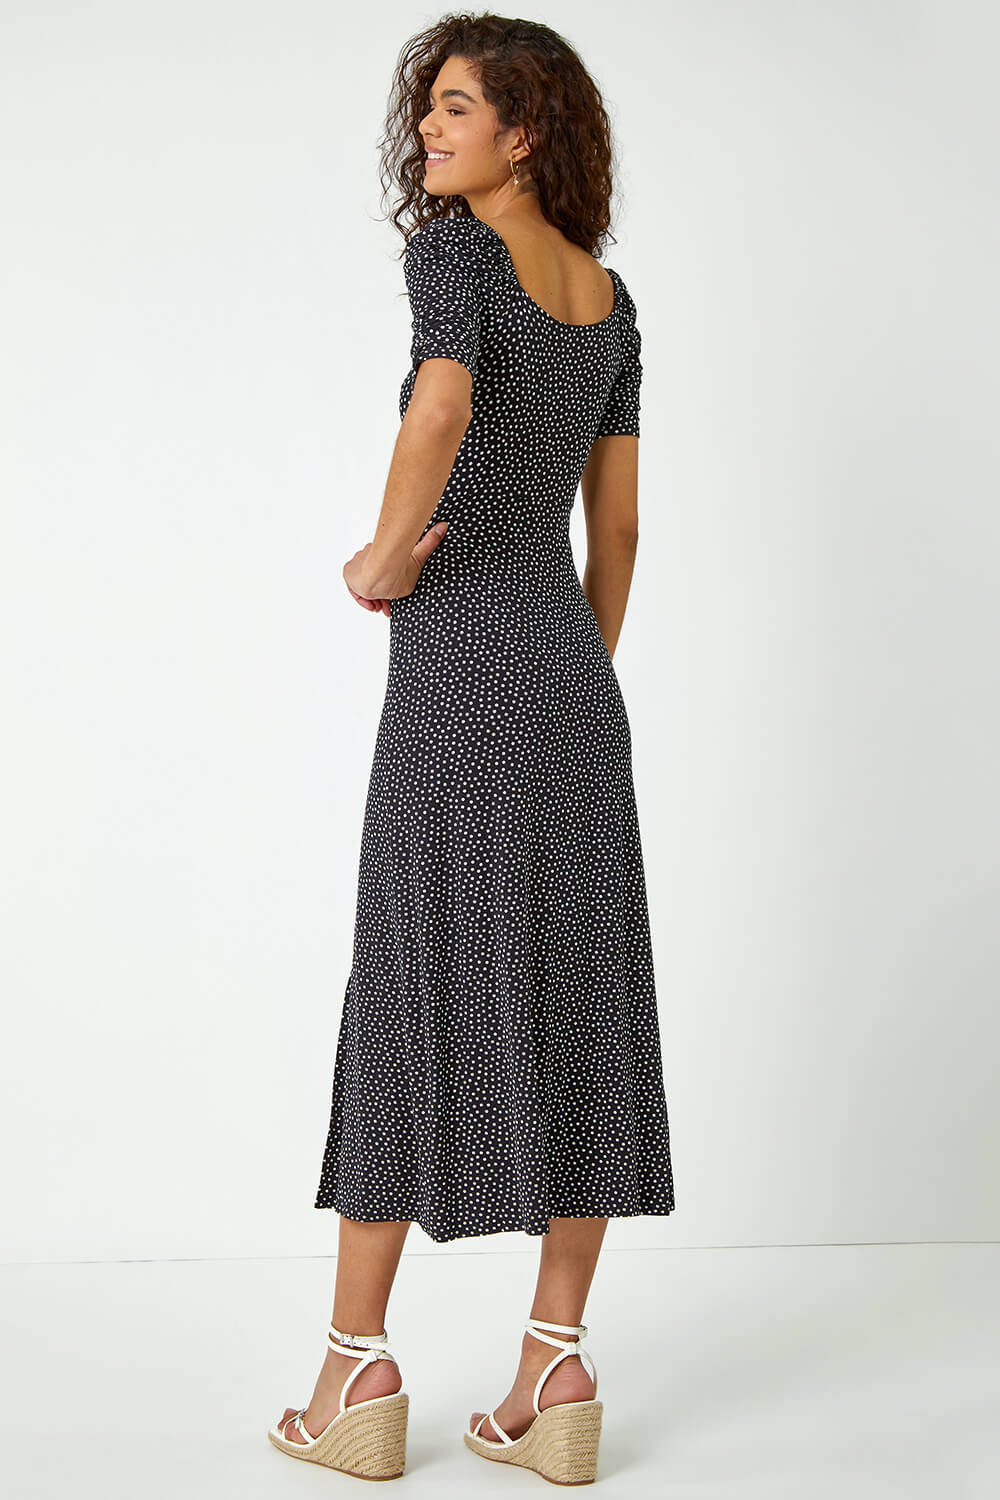 Black Polka Dot Print Midi Dress, Image 2 of 5